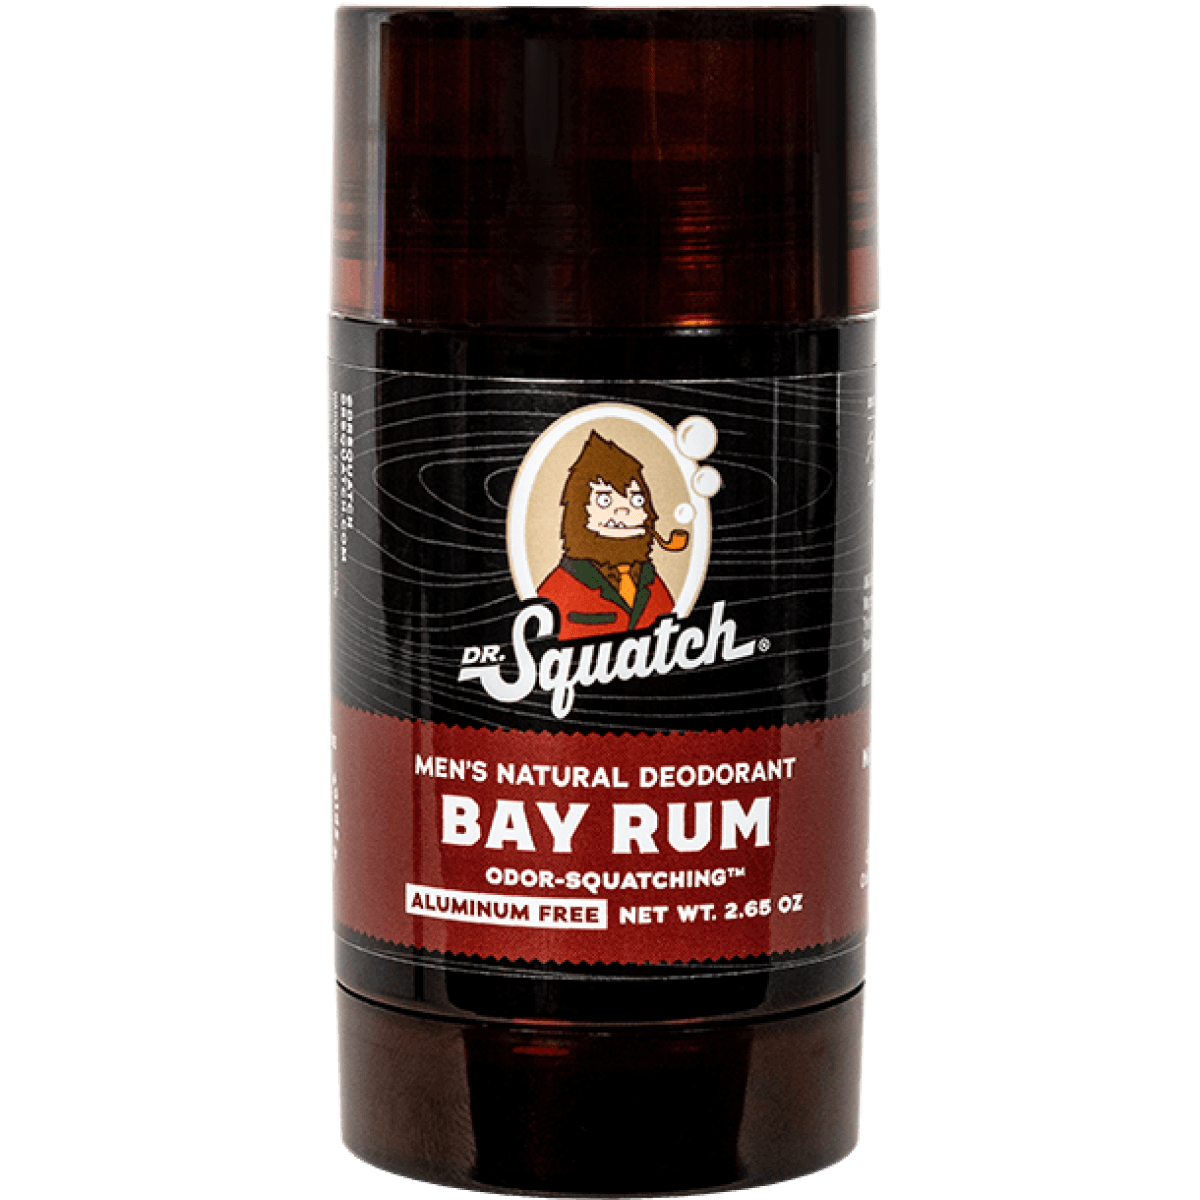 Dr. Squatch - Bay Rum Bar